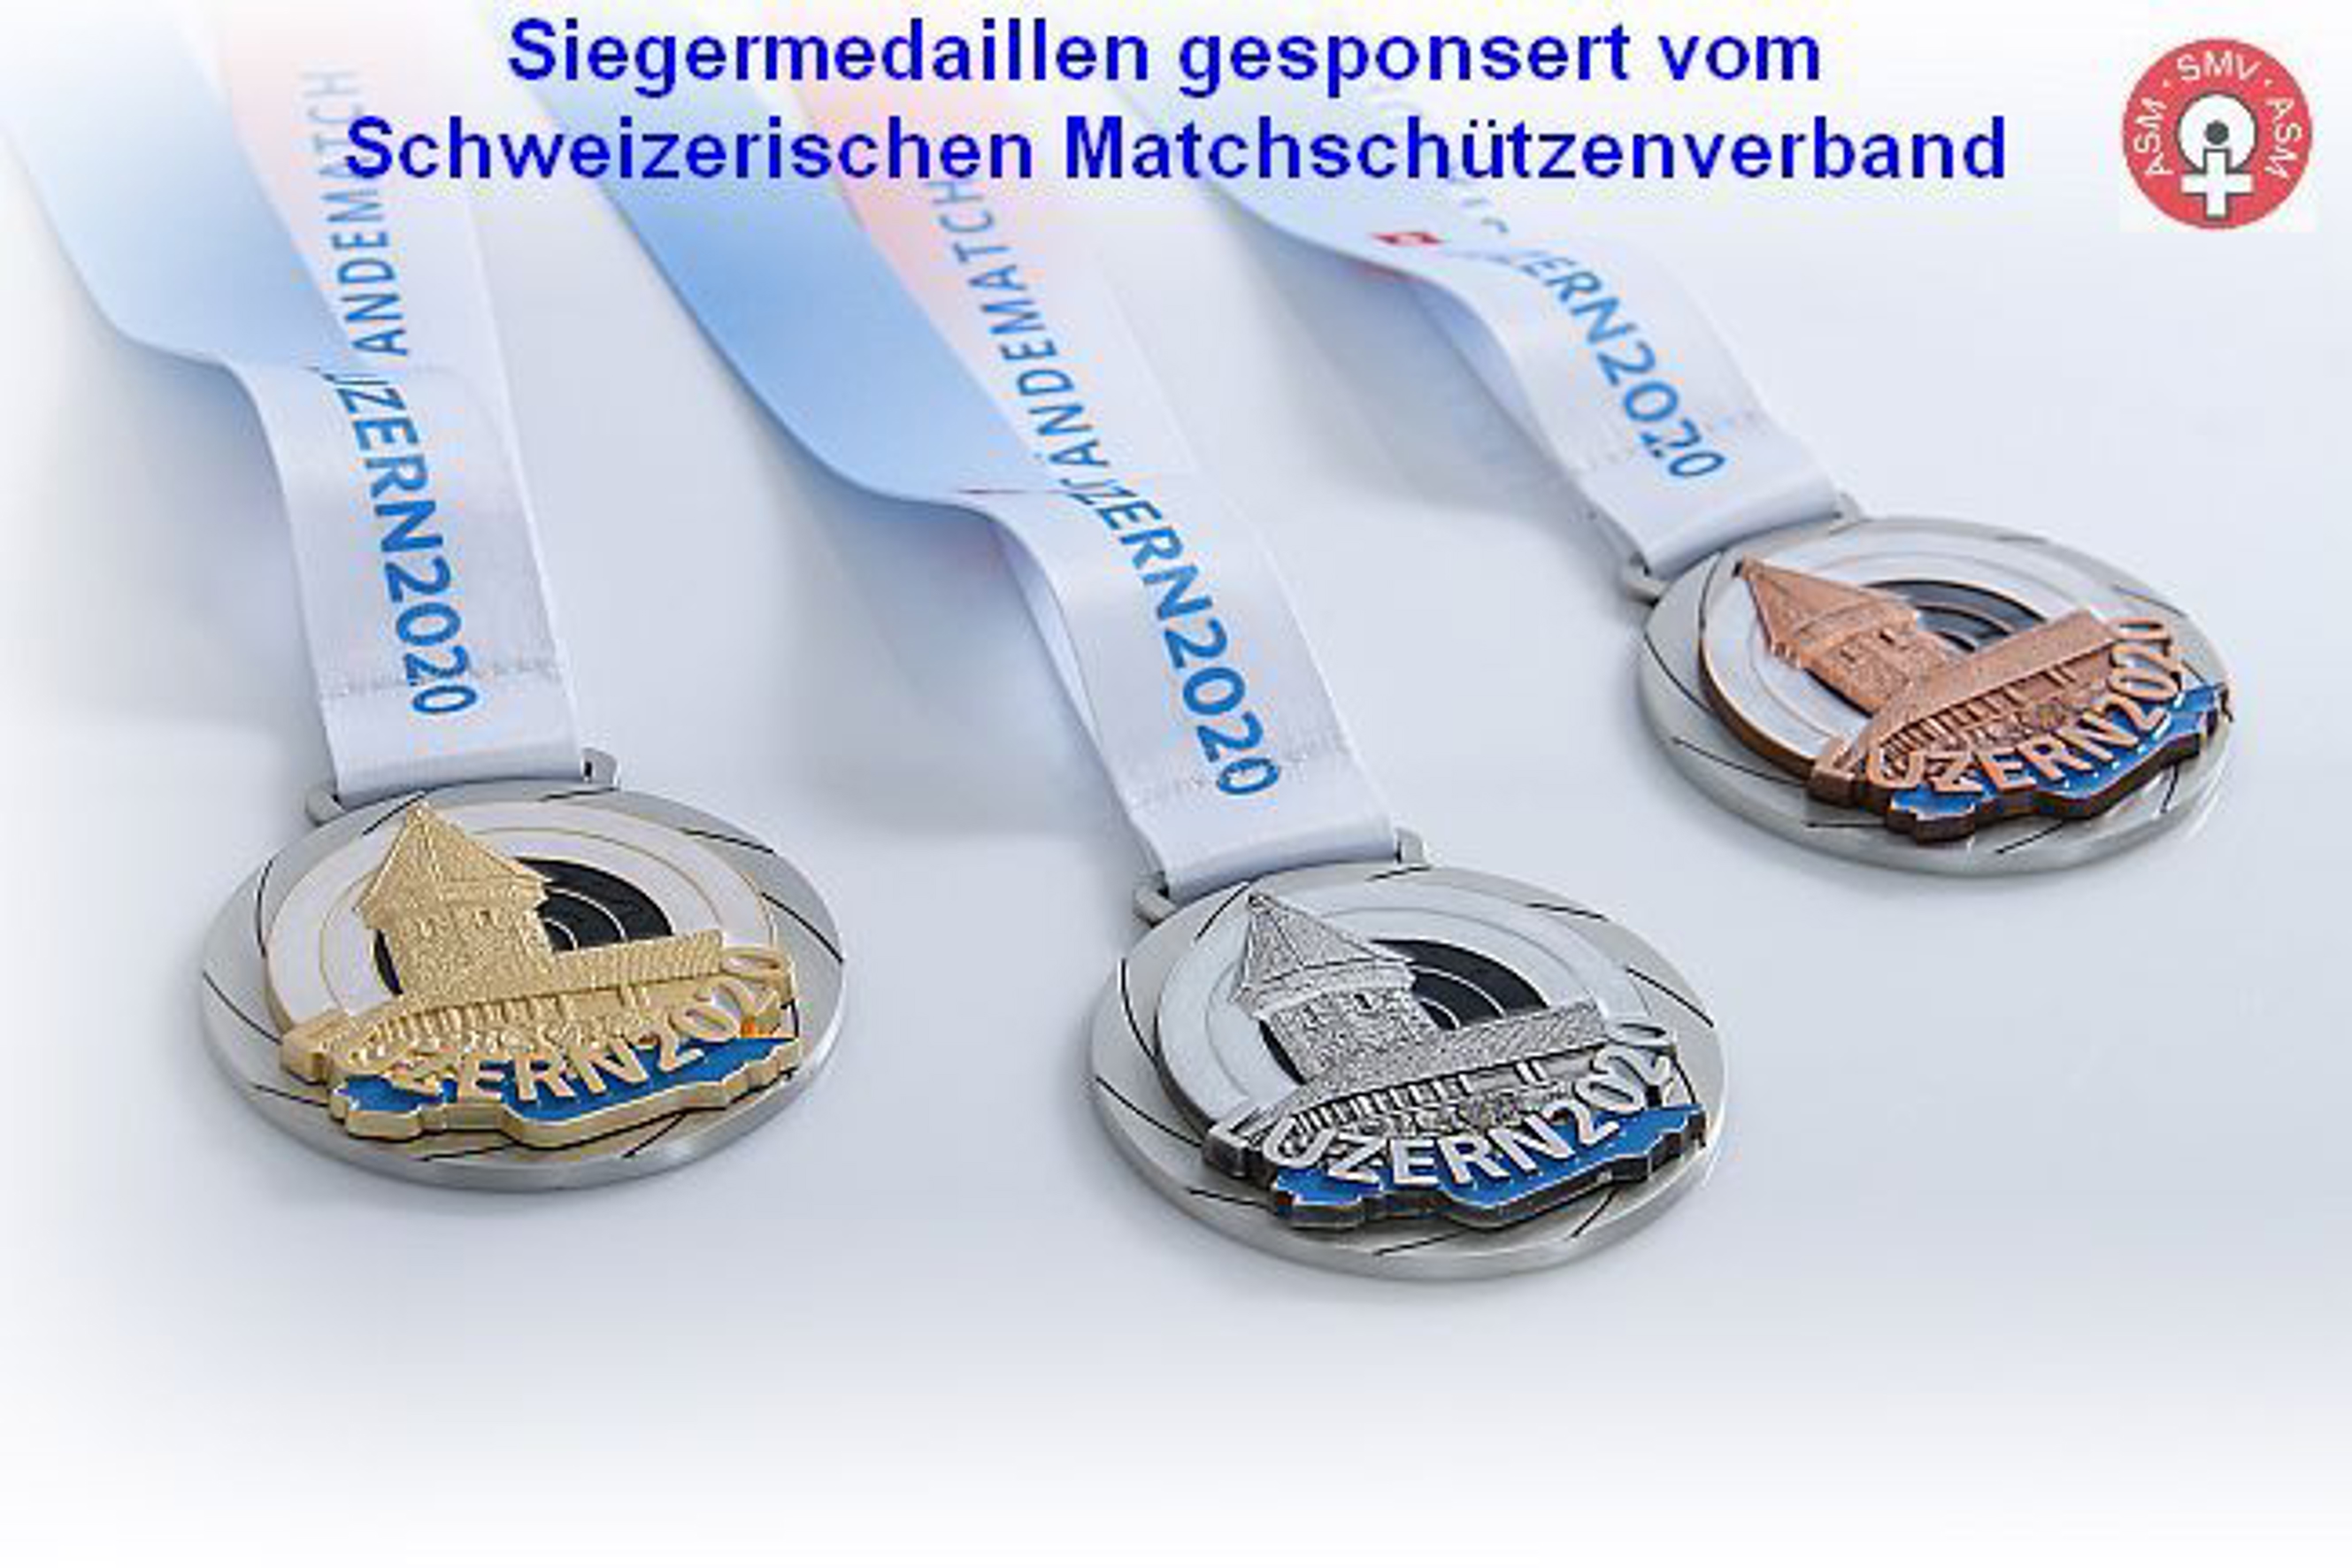 20201212_ESM_2020_Siegermedaillen_648x432_Text_und_SMV_Logo.jpg